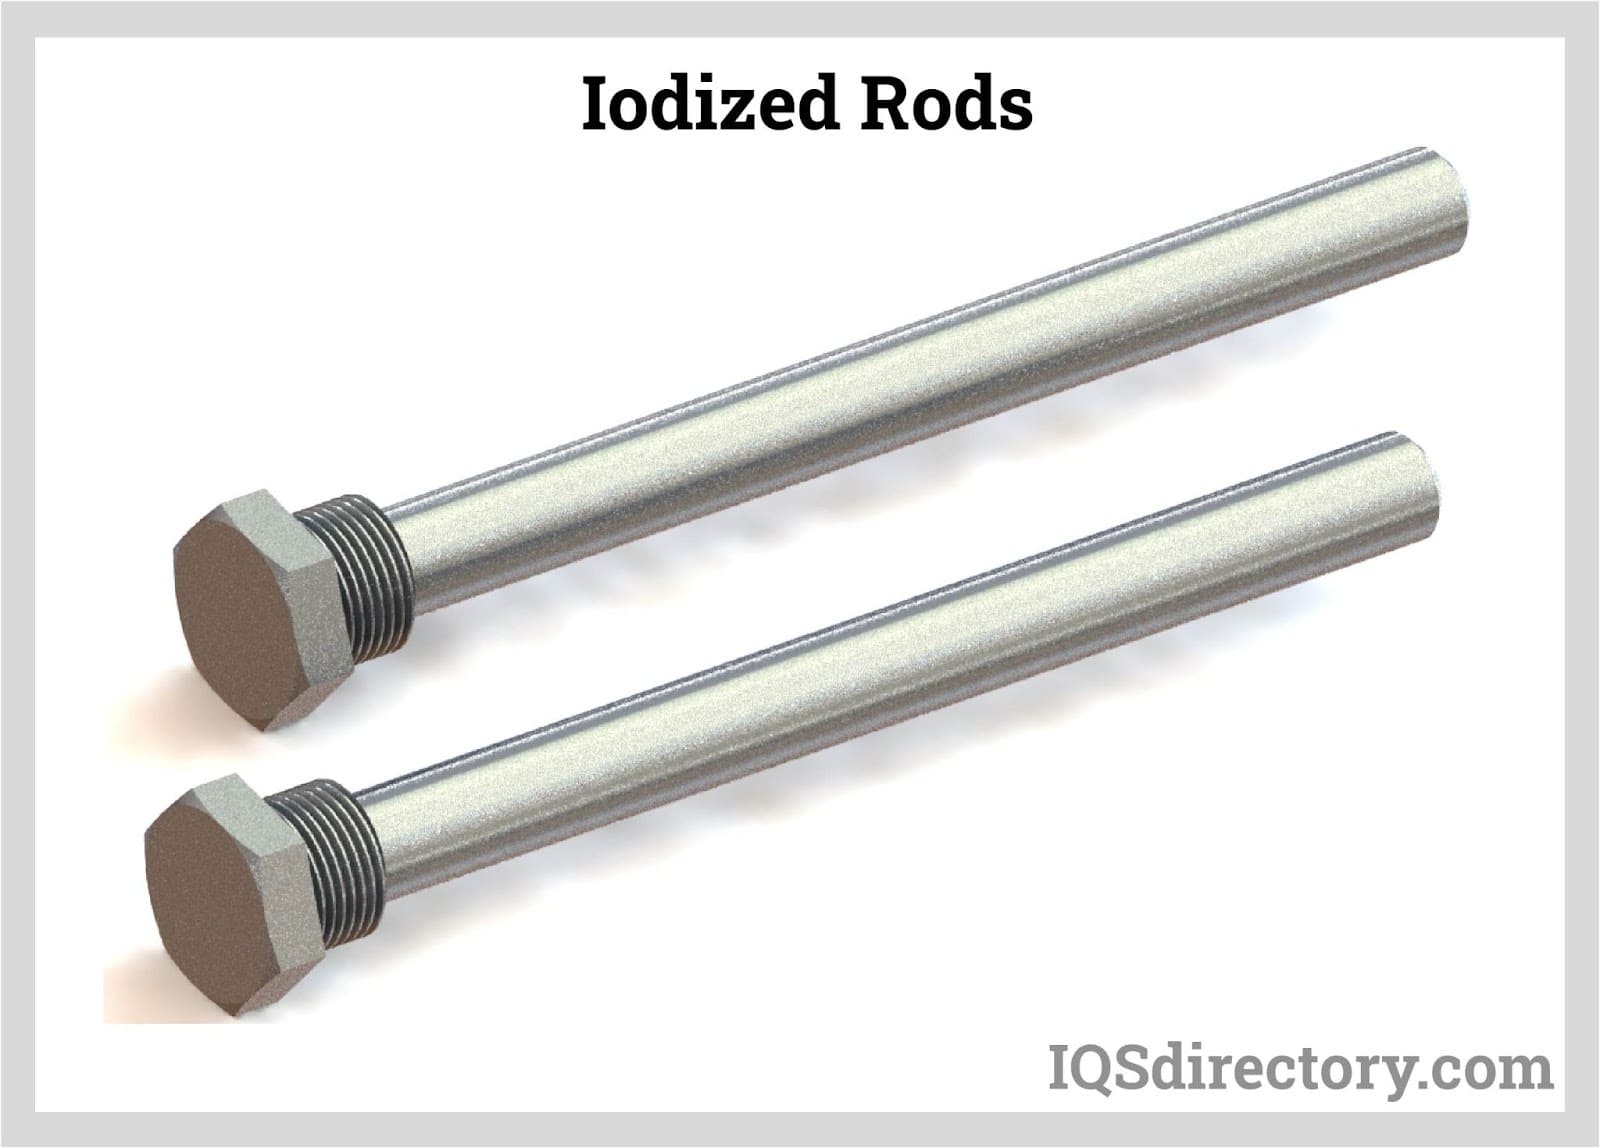 Iodized Rods